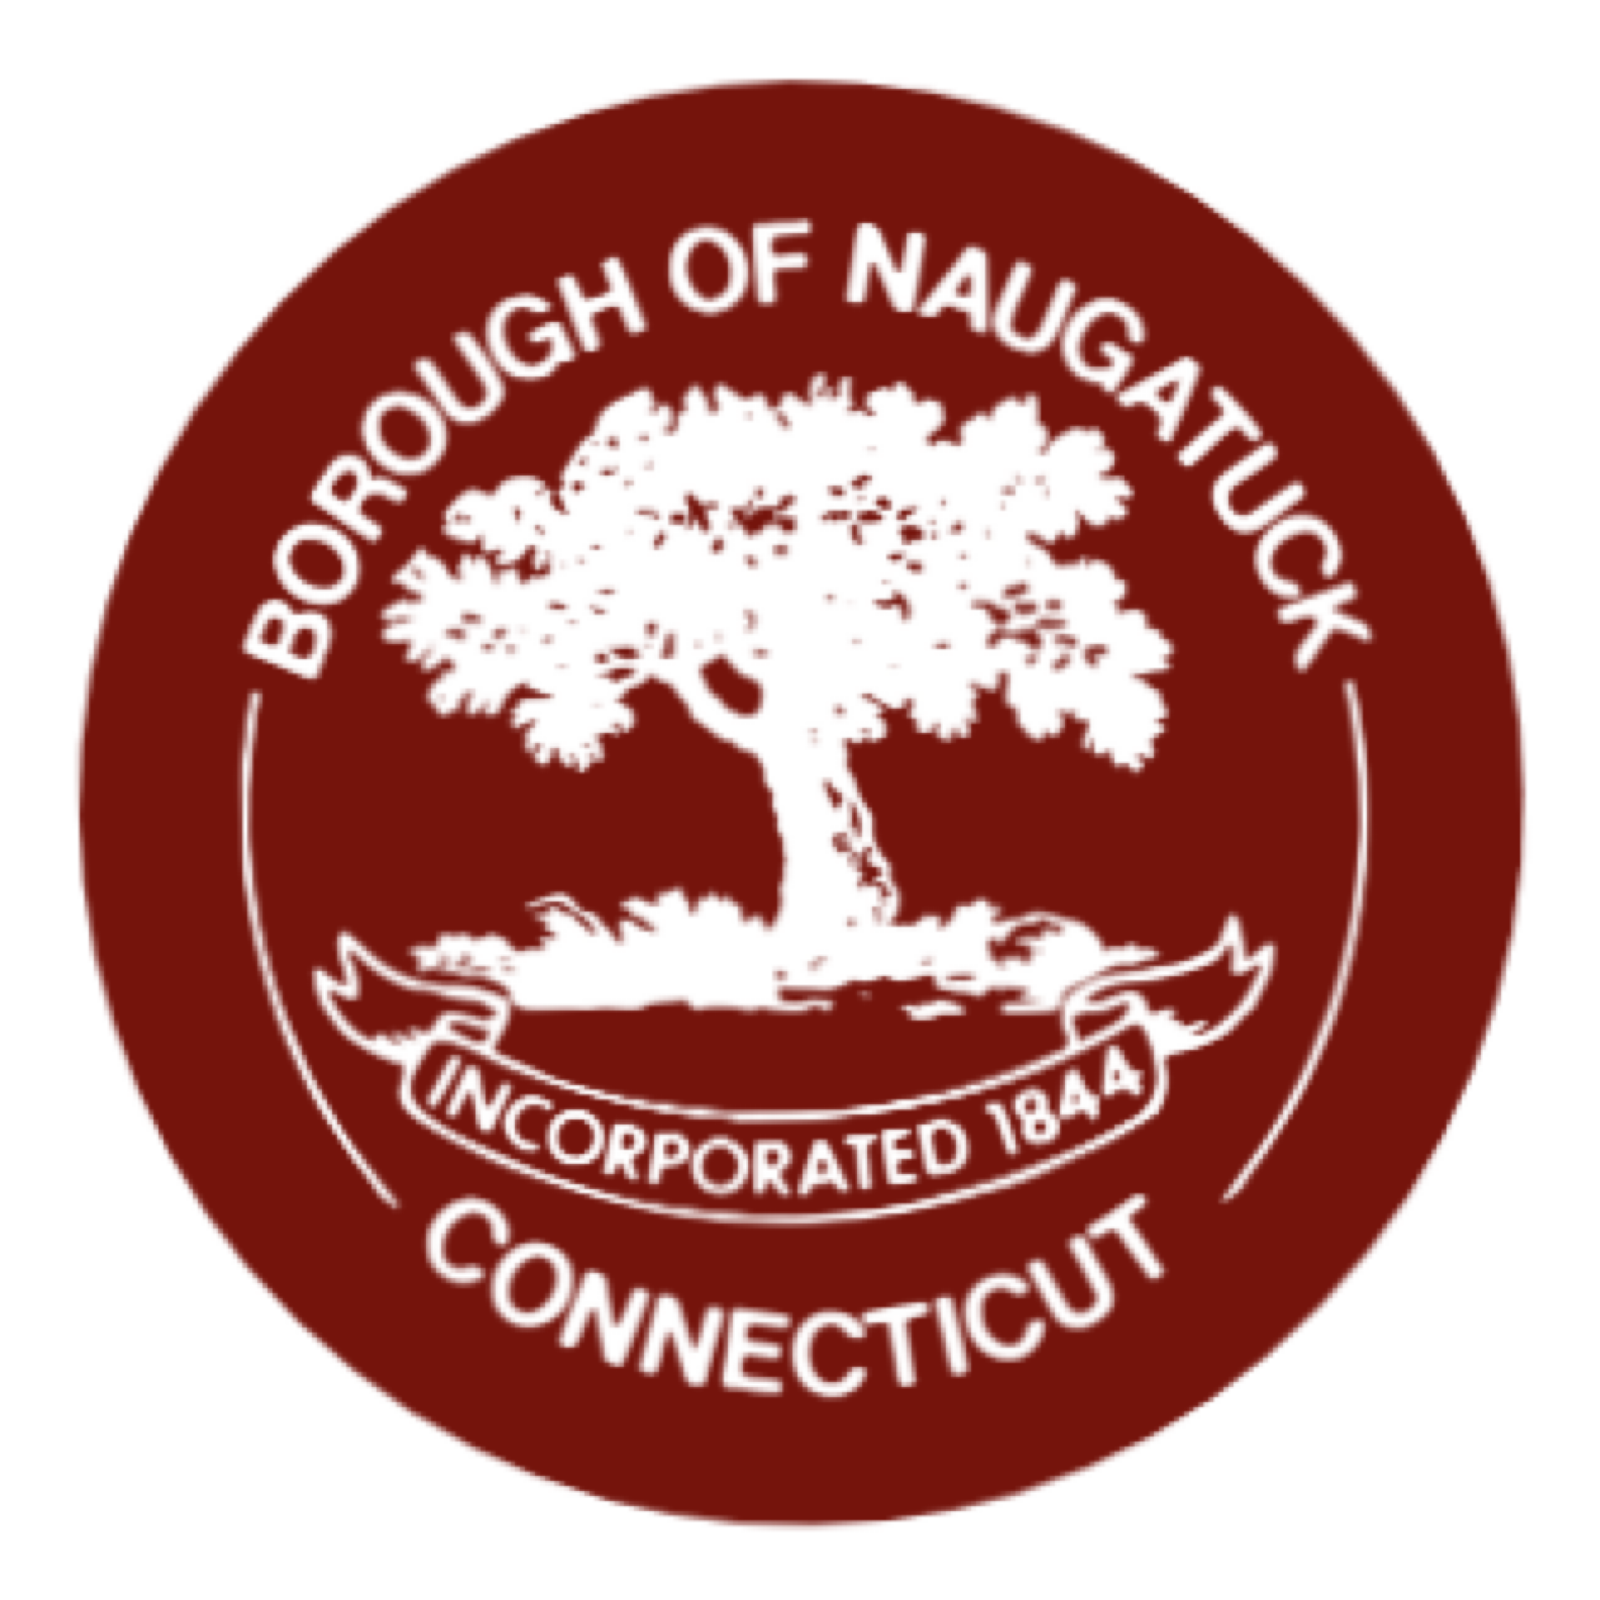 a logo for the borough of naugatuck connecticut